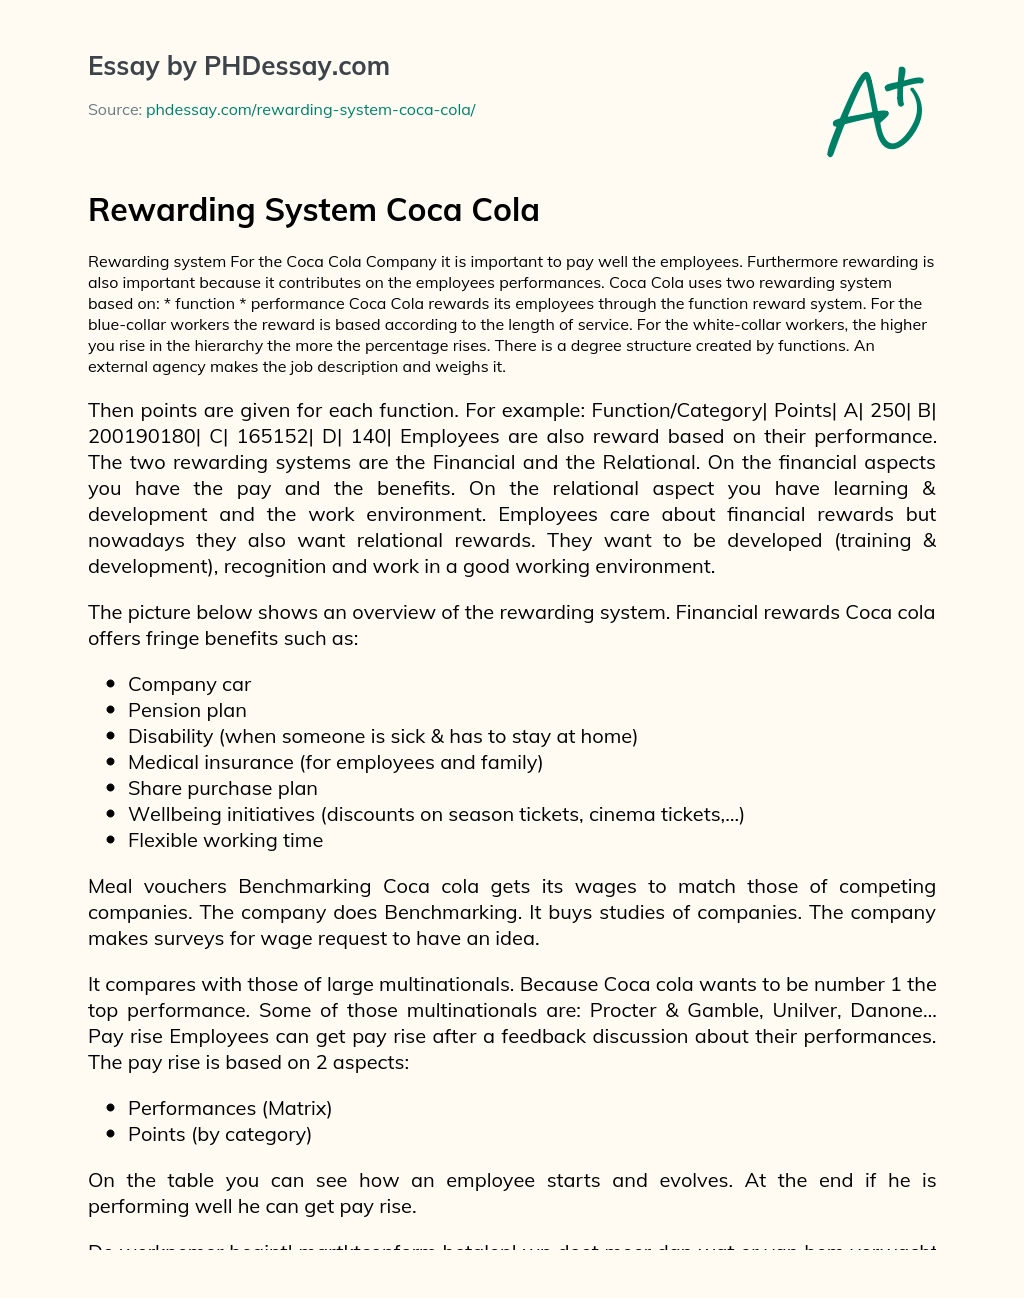 Rewarding System Coca Cola essay